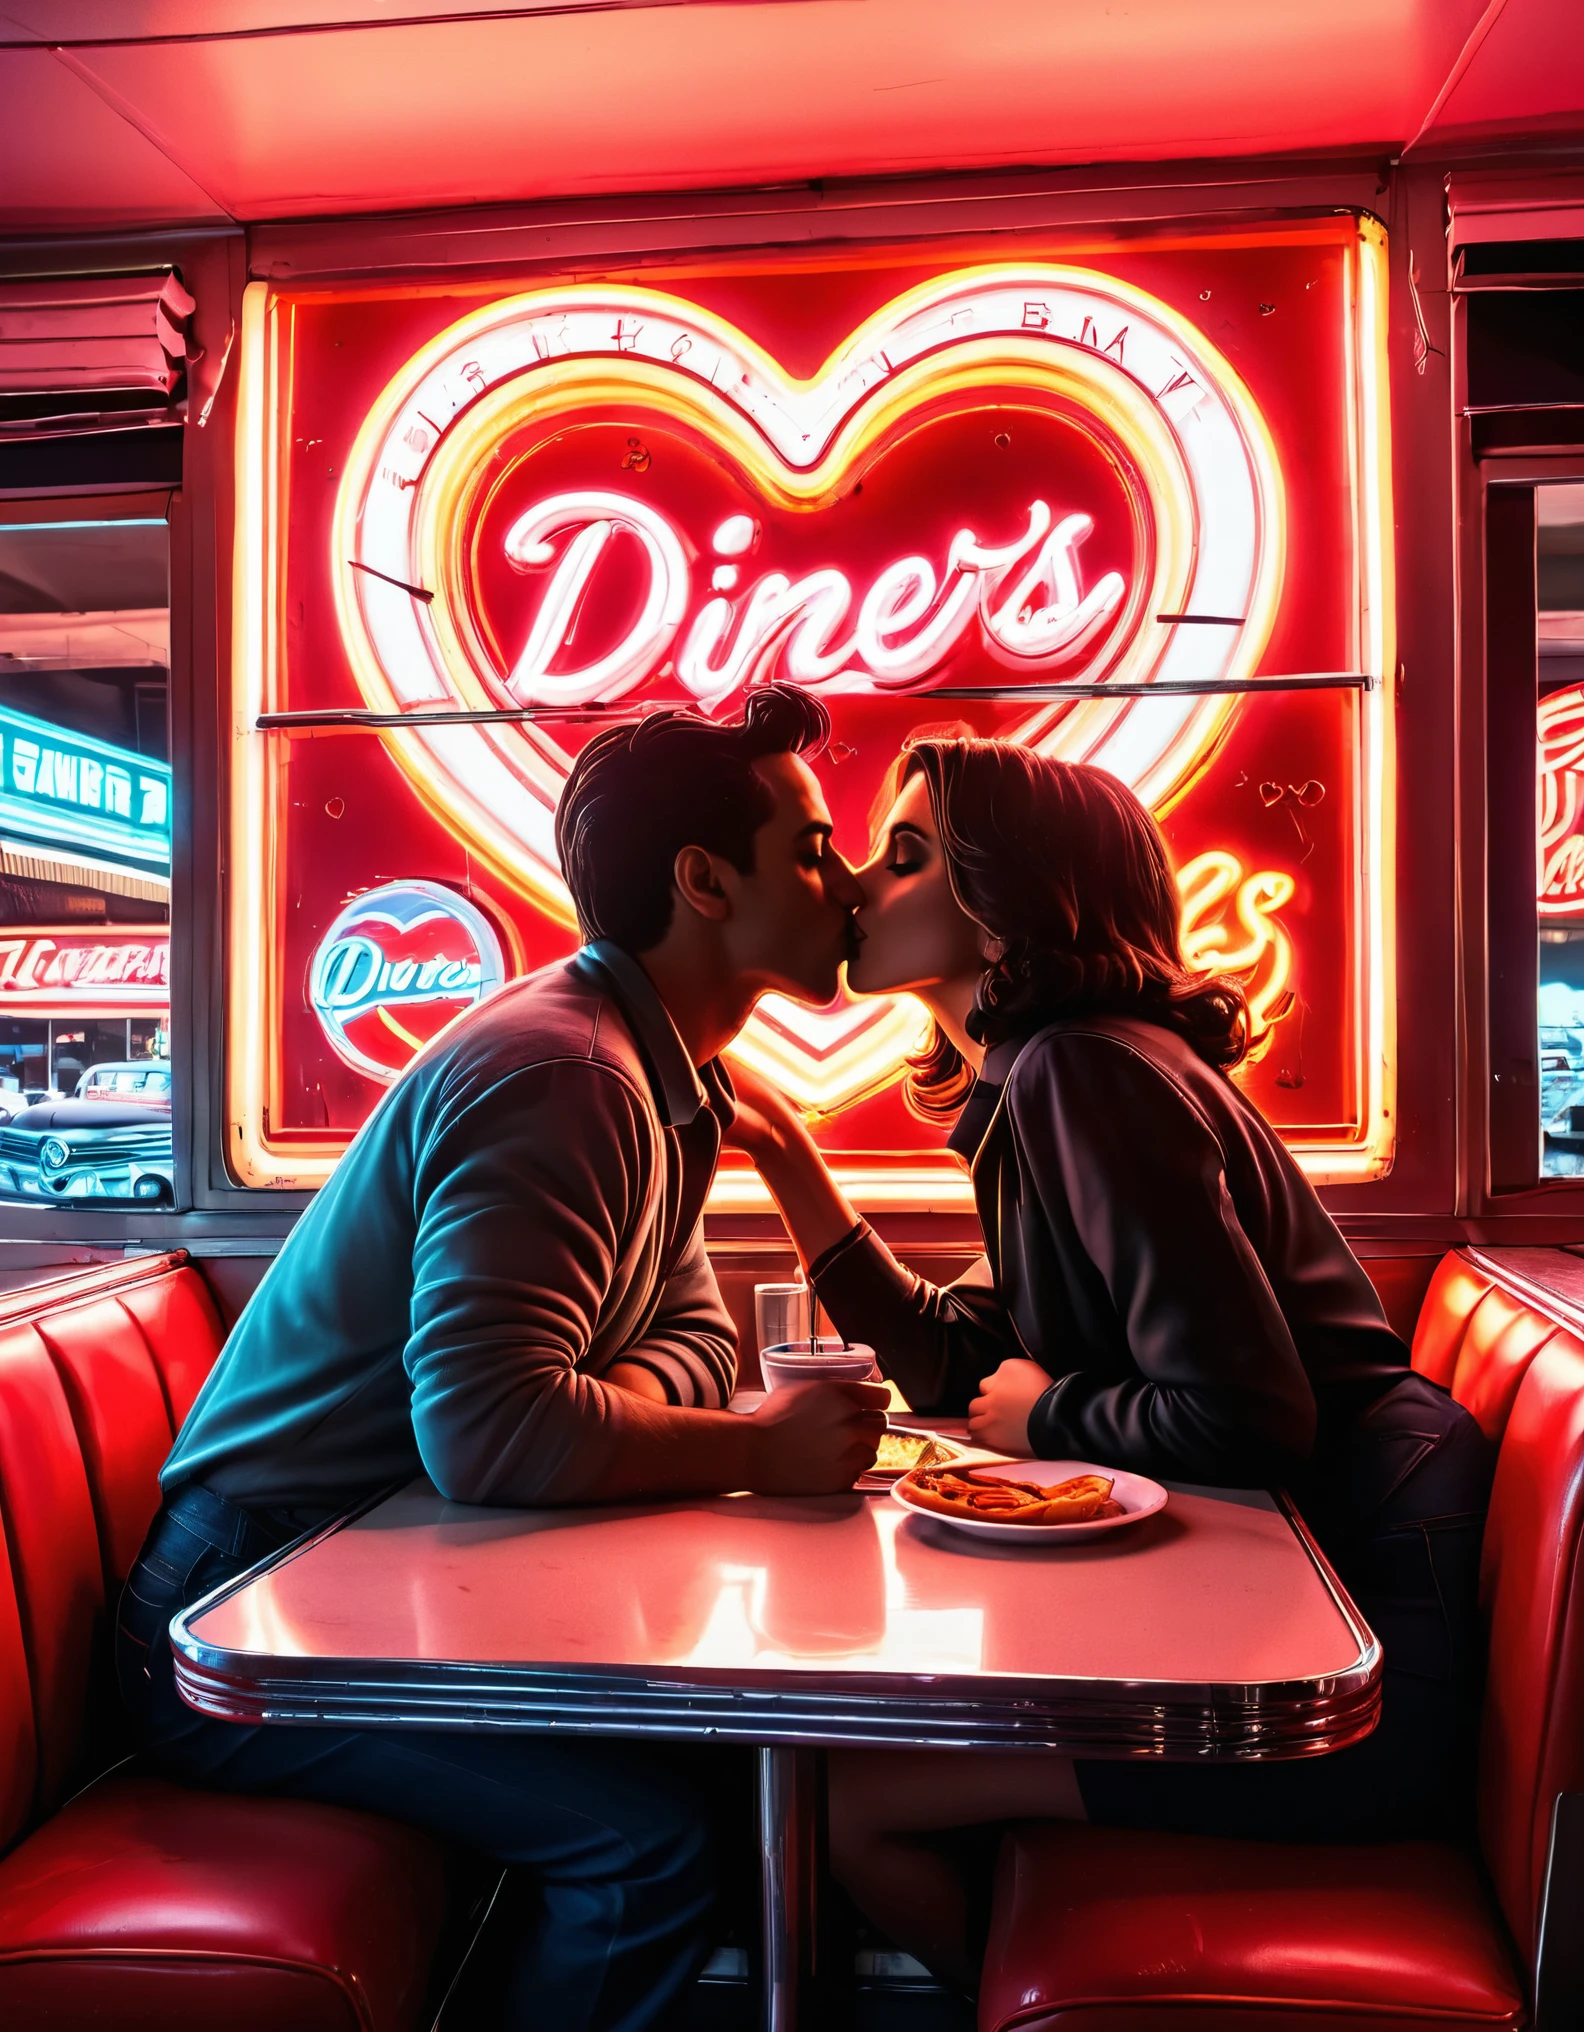 Неоновое произведение искусства в стиле ретро с силуэтом целующейся пары в закусочной., с неоновыми вывесками и сердечками на заднем плане, вызывающий ностальгическую атмосферу 1950-х годов